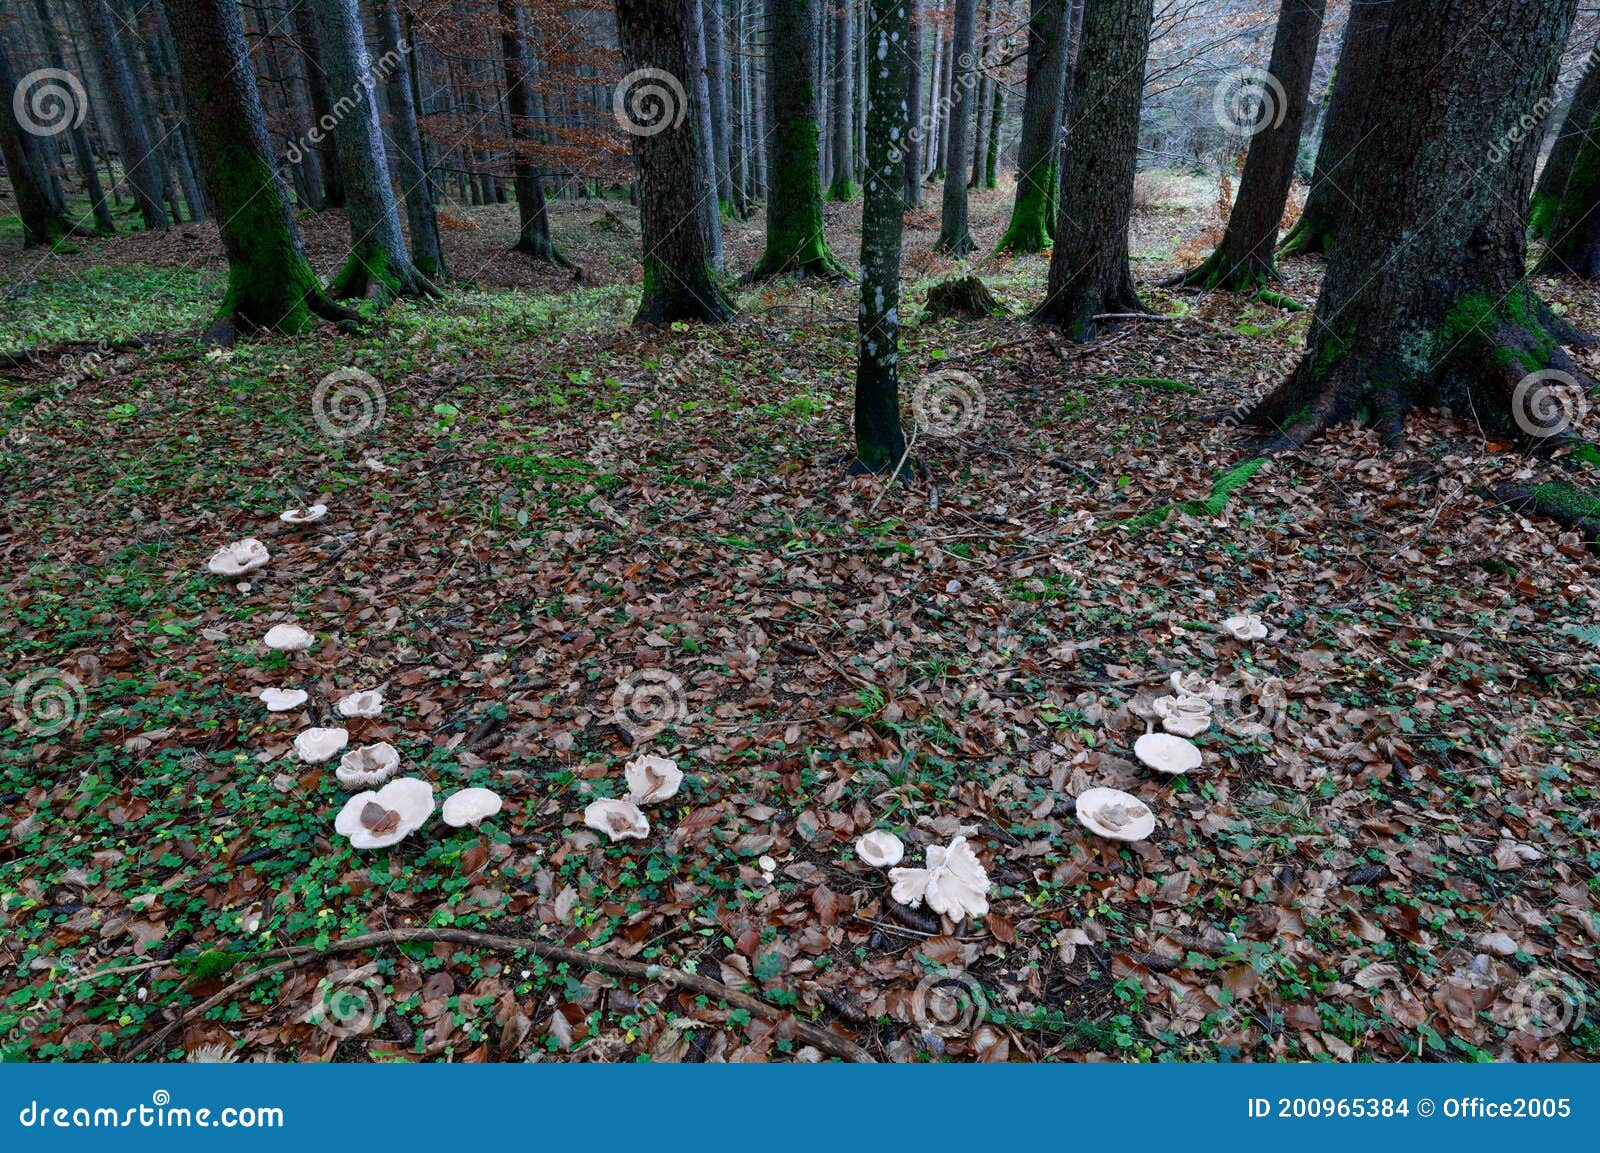 Suillus species- Slippery Jack et al. | Tall trees and Mushrooms